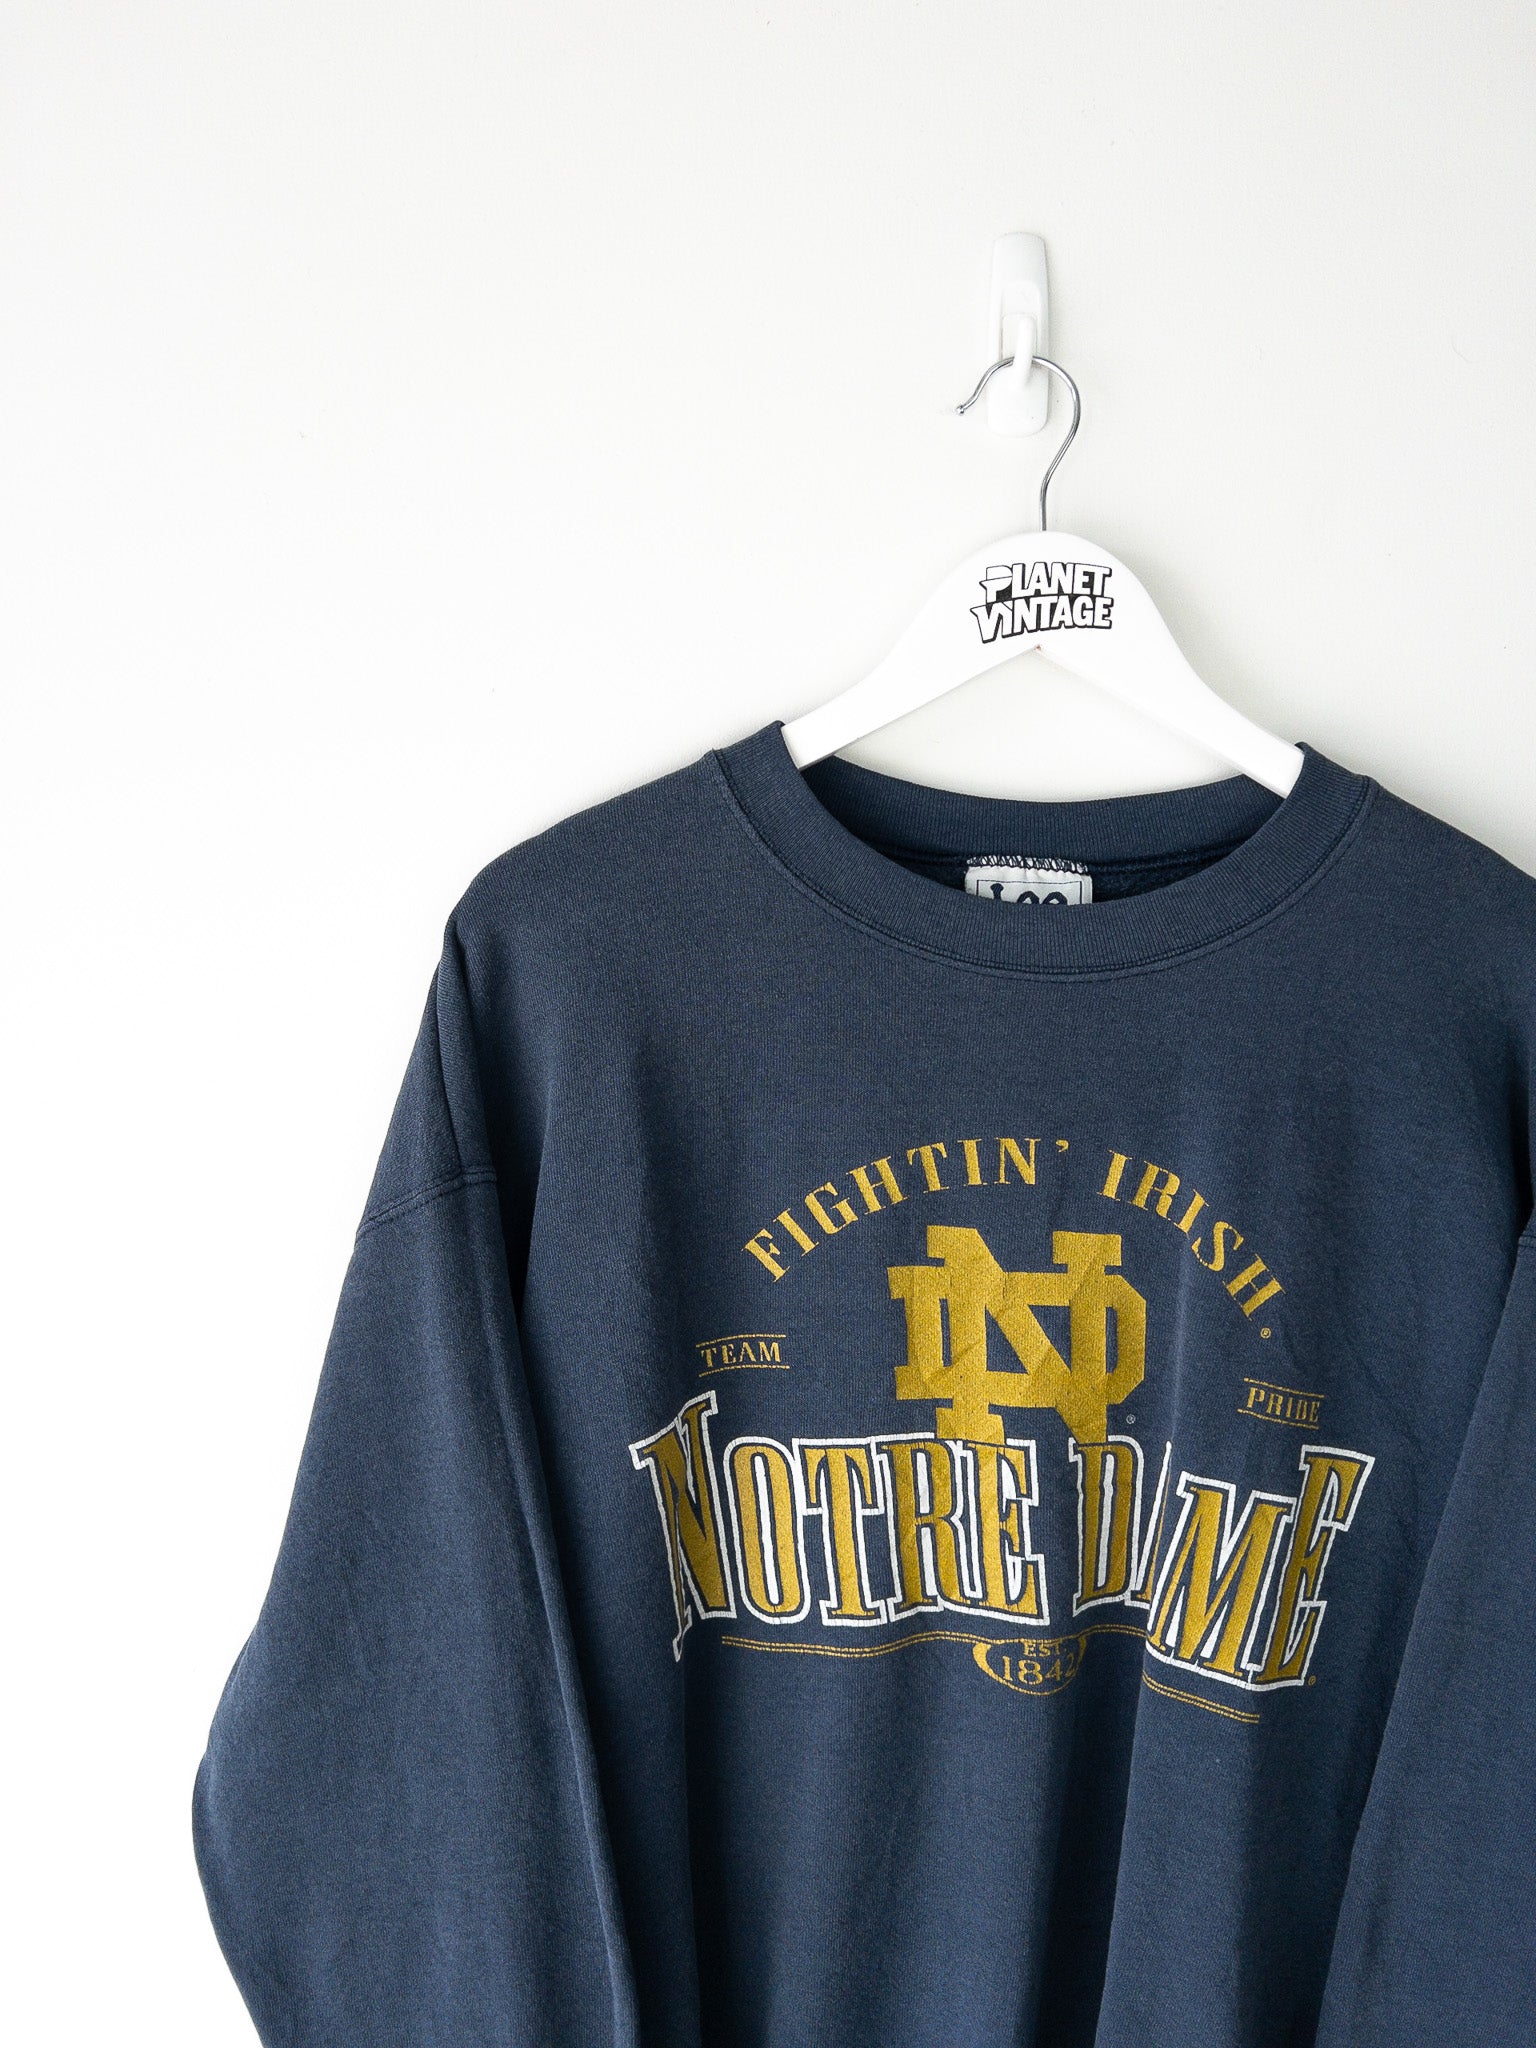 Vintage Notre Dame Fightin' Irish Sweatshirt (L)